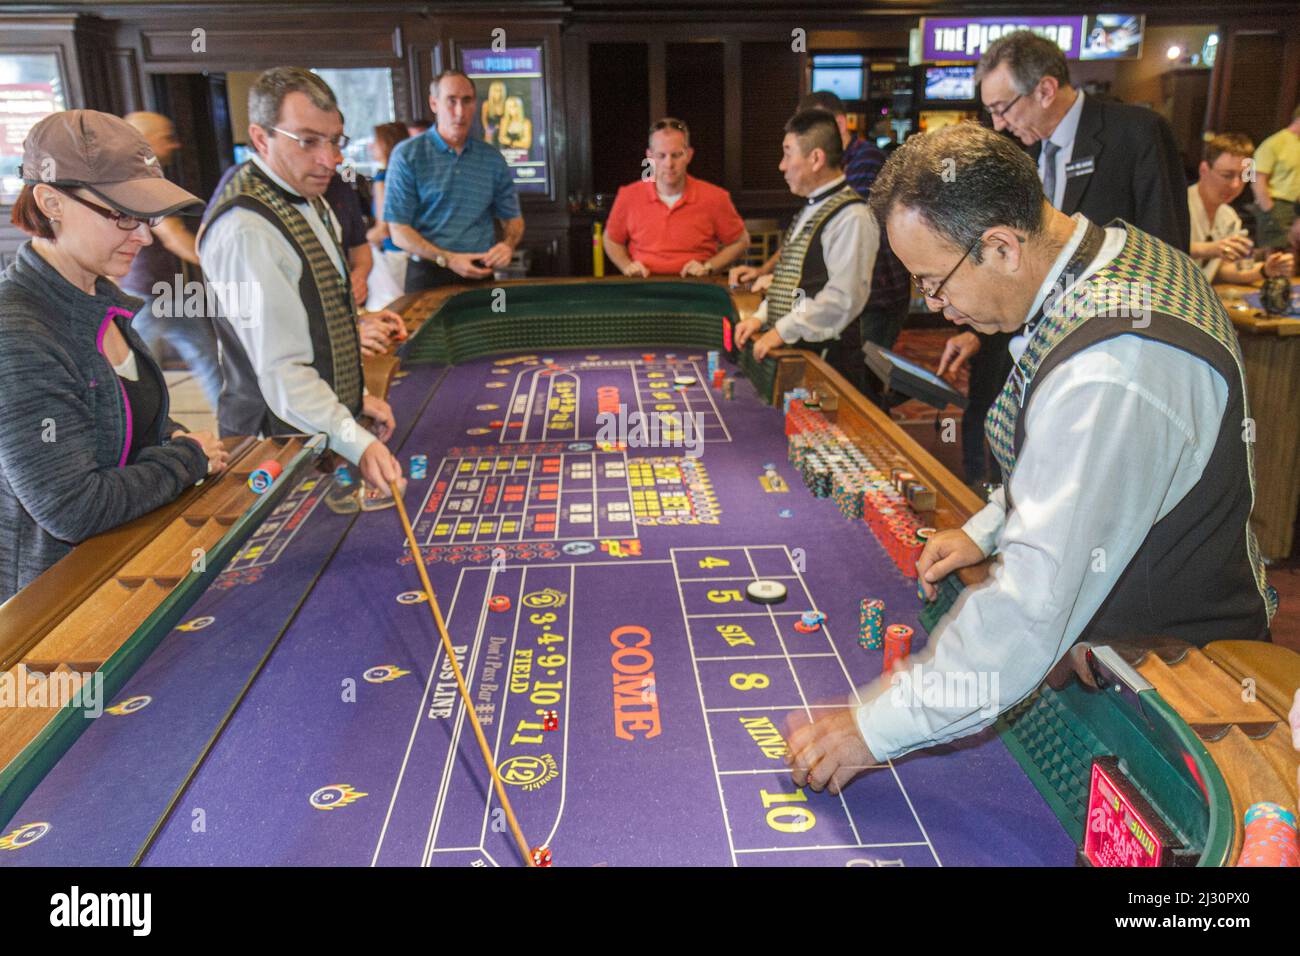 Las Vegas Nevada, Strip, South Boulevard Harrah's Hotel Casino, Spieler spielen, Craps Tisch, Mitarbeiter Arbeiter Boxman Basis Händler stickman Männer Spieler Stockfoto